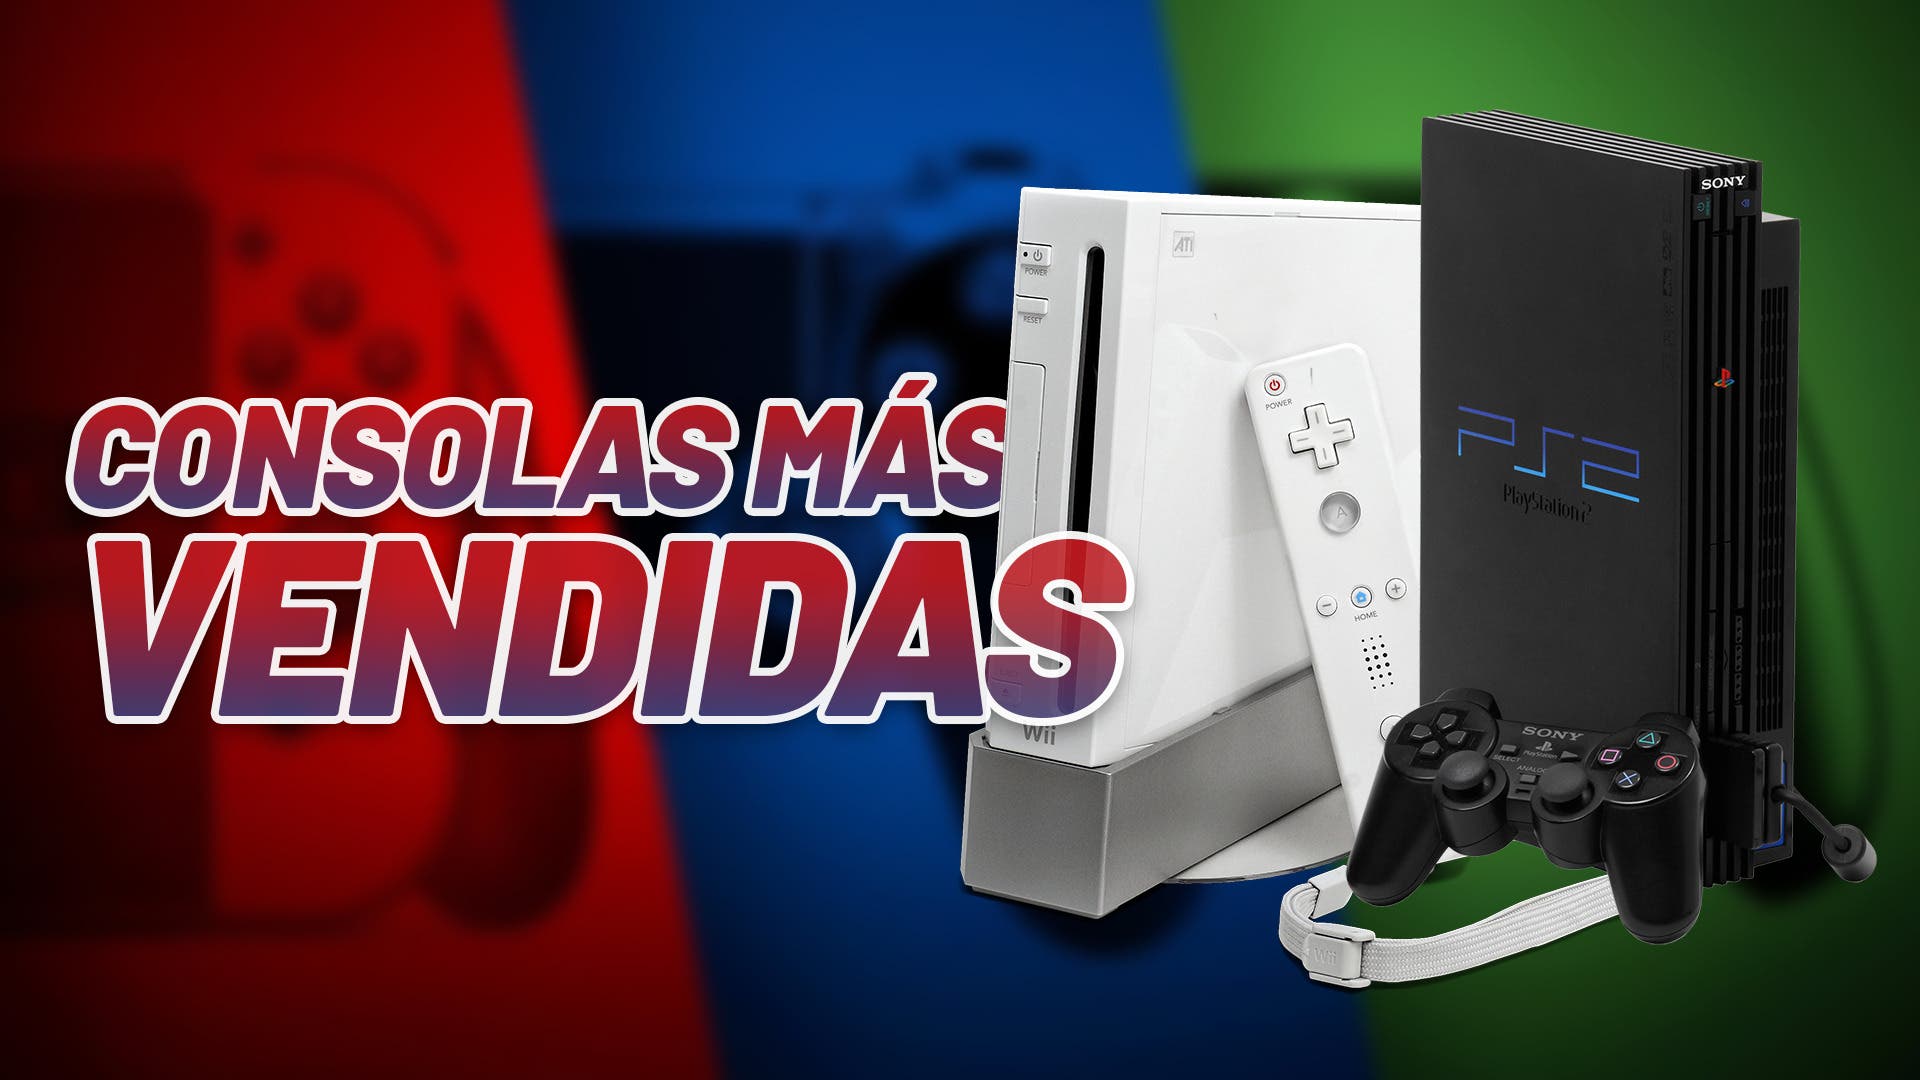 El pack Consola PlayStation 5 con EA Sports FC 24 llega el 29 de septiembre  – PlayStation.Blog en español